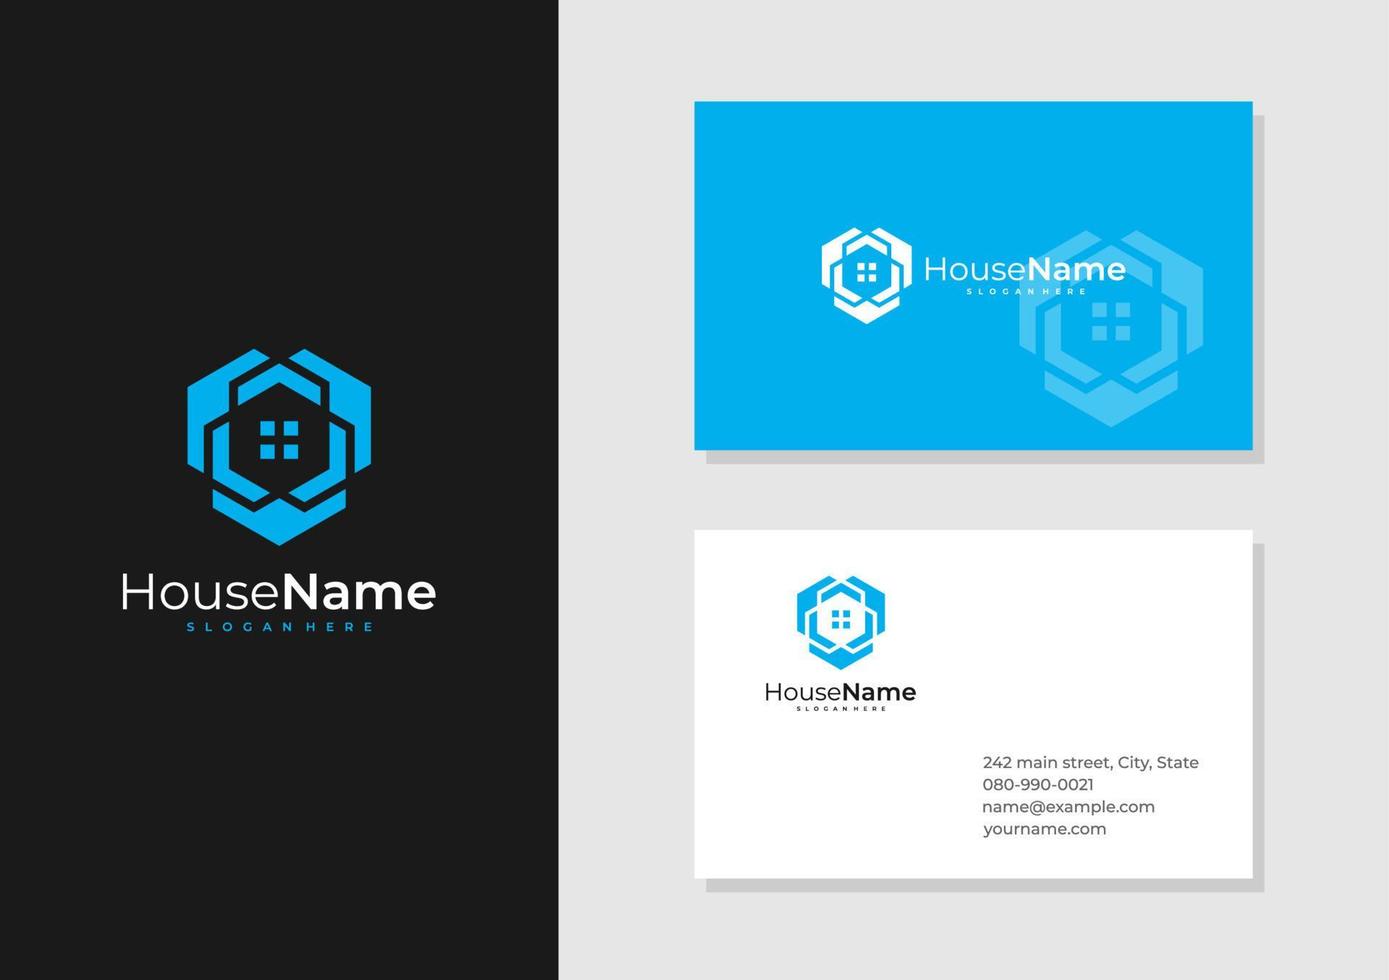 Hexagon House logo with business card template. Creative Home logo design concepts vector